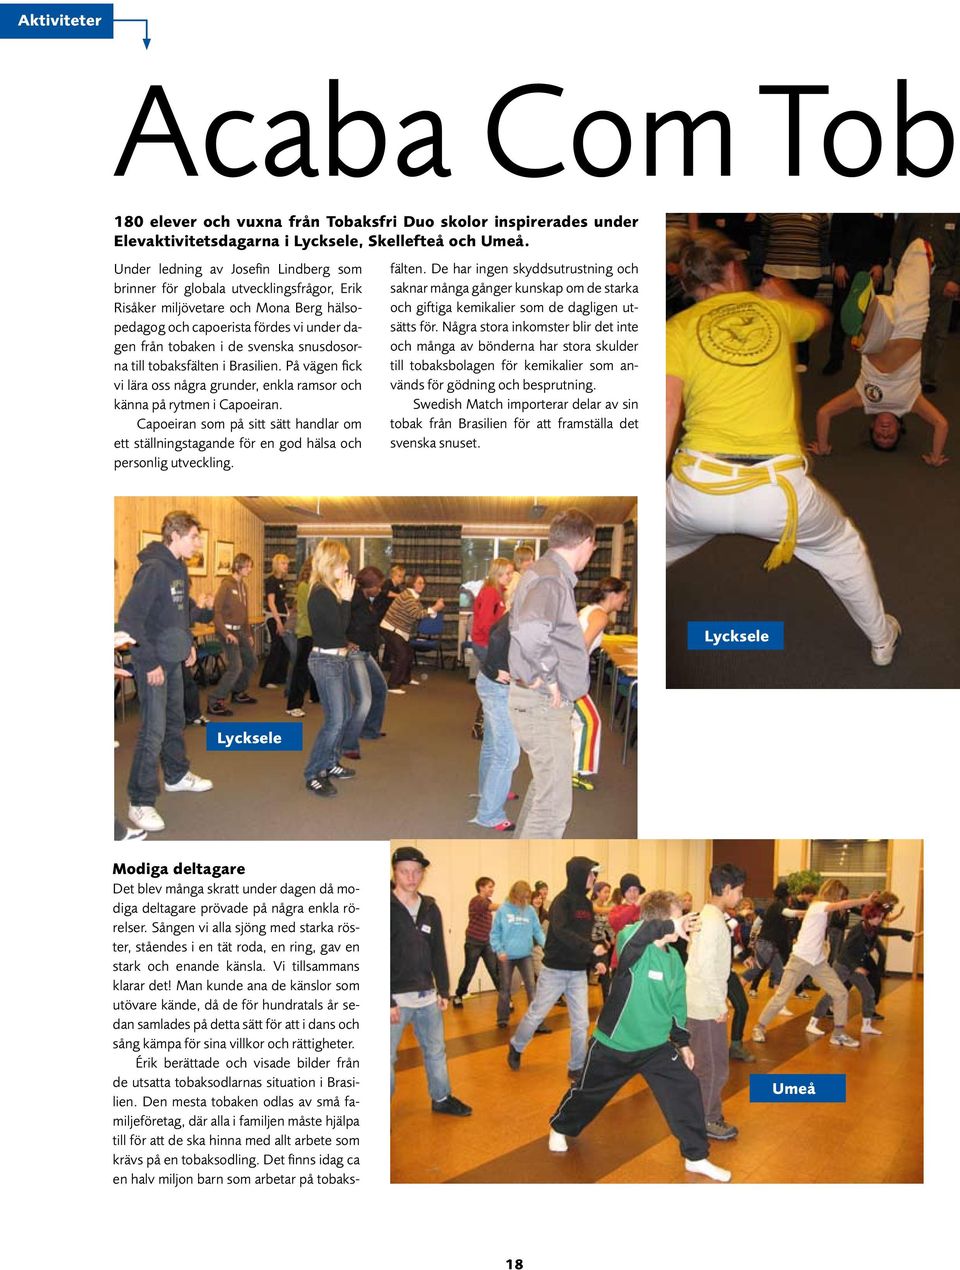 snusdosorna till tobaksfälten i Brasilien. På vägen fick vi lära oss några grunder, enkla ramsor och känna på rytmen i Capoeiran.